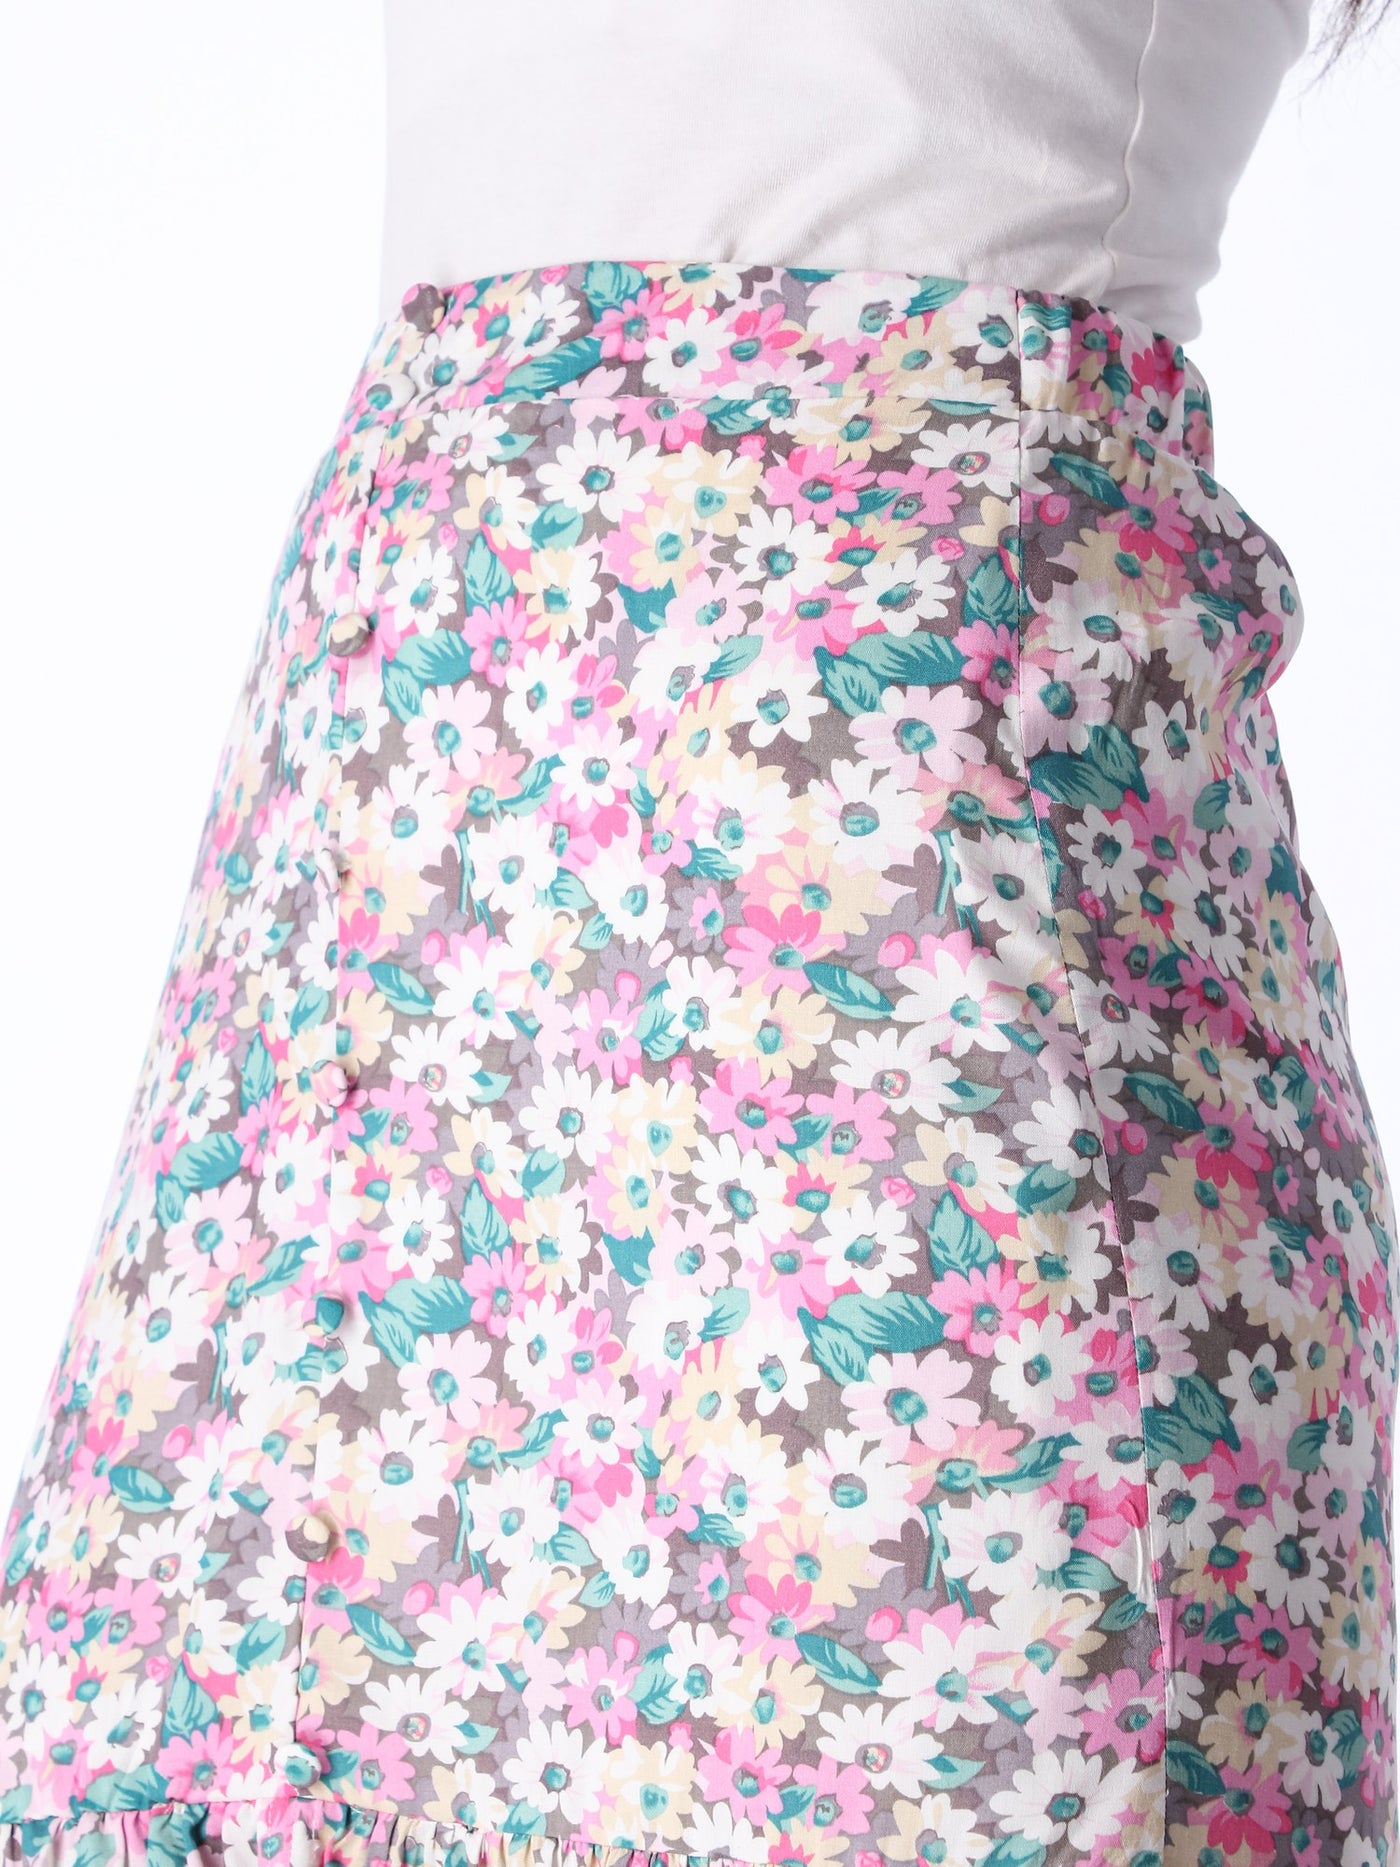 OR Women's Midi Length Floral Print Skirt